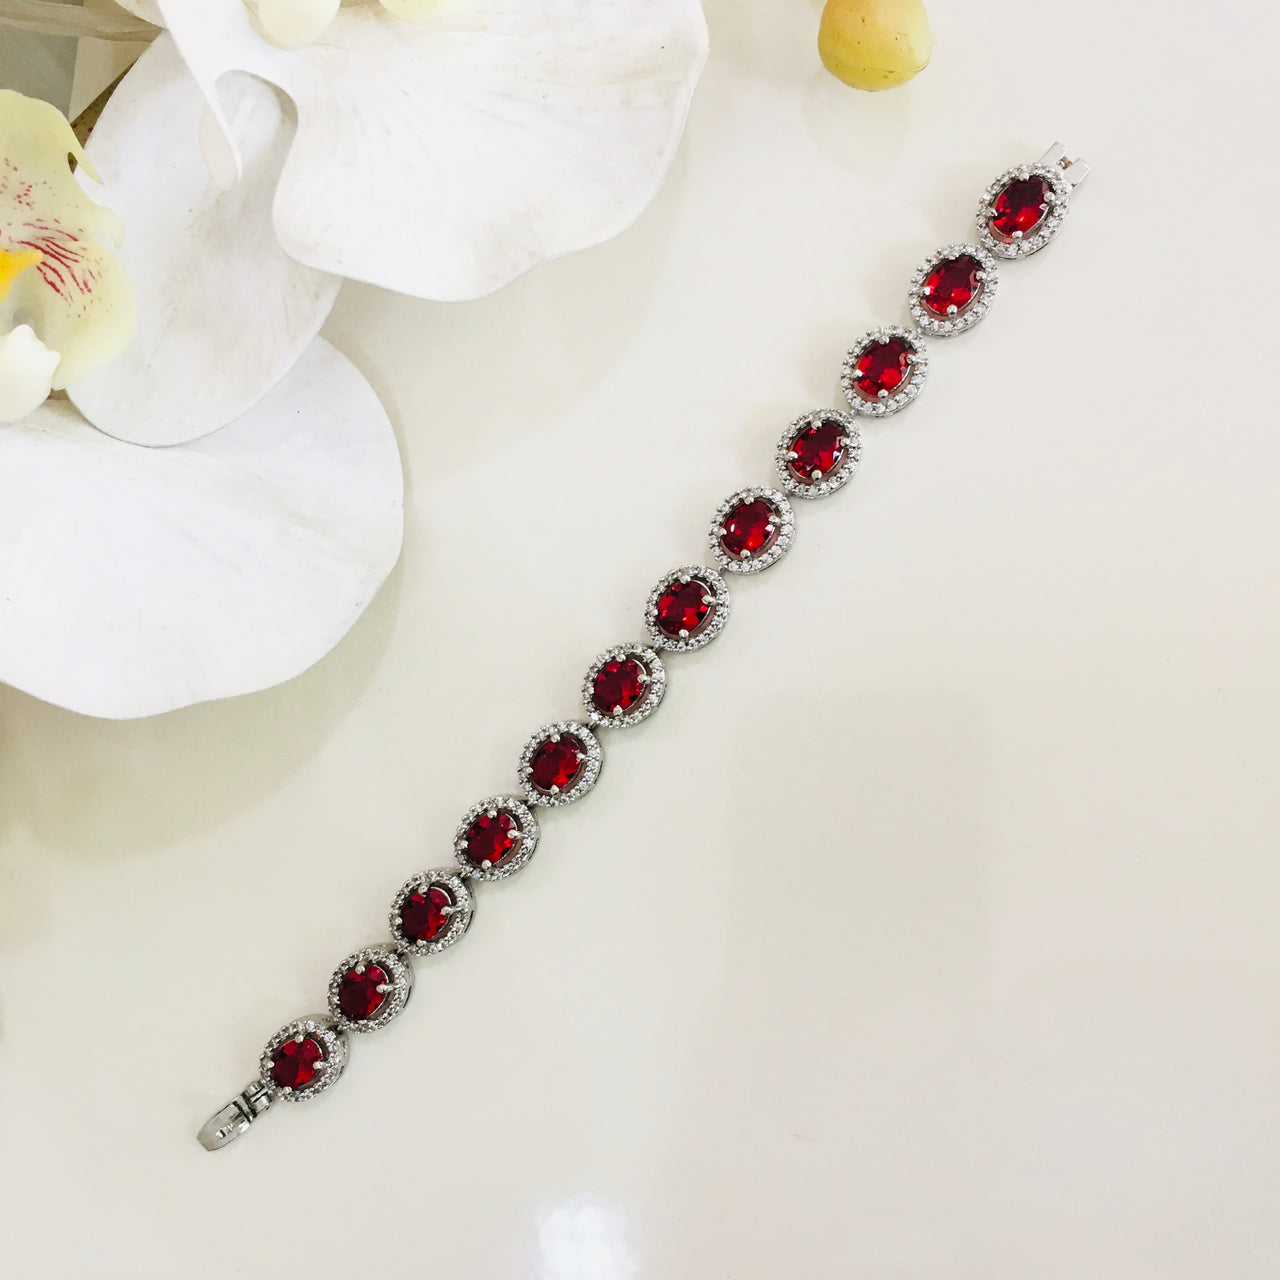 Buy Original Ruby with Zoisite Stone Bracelet